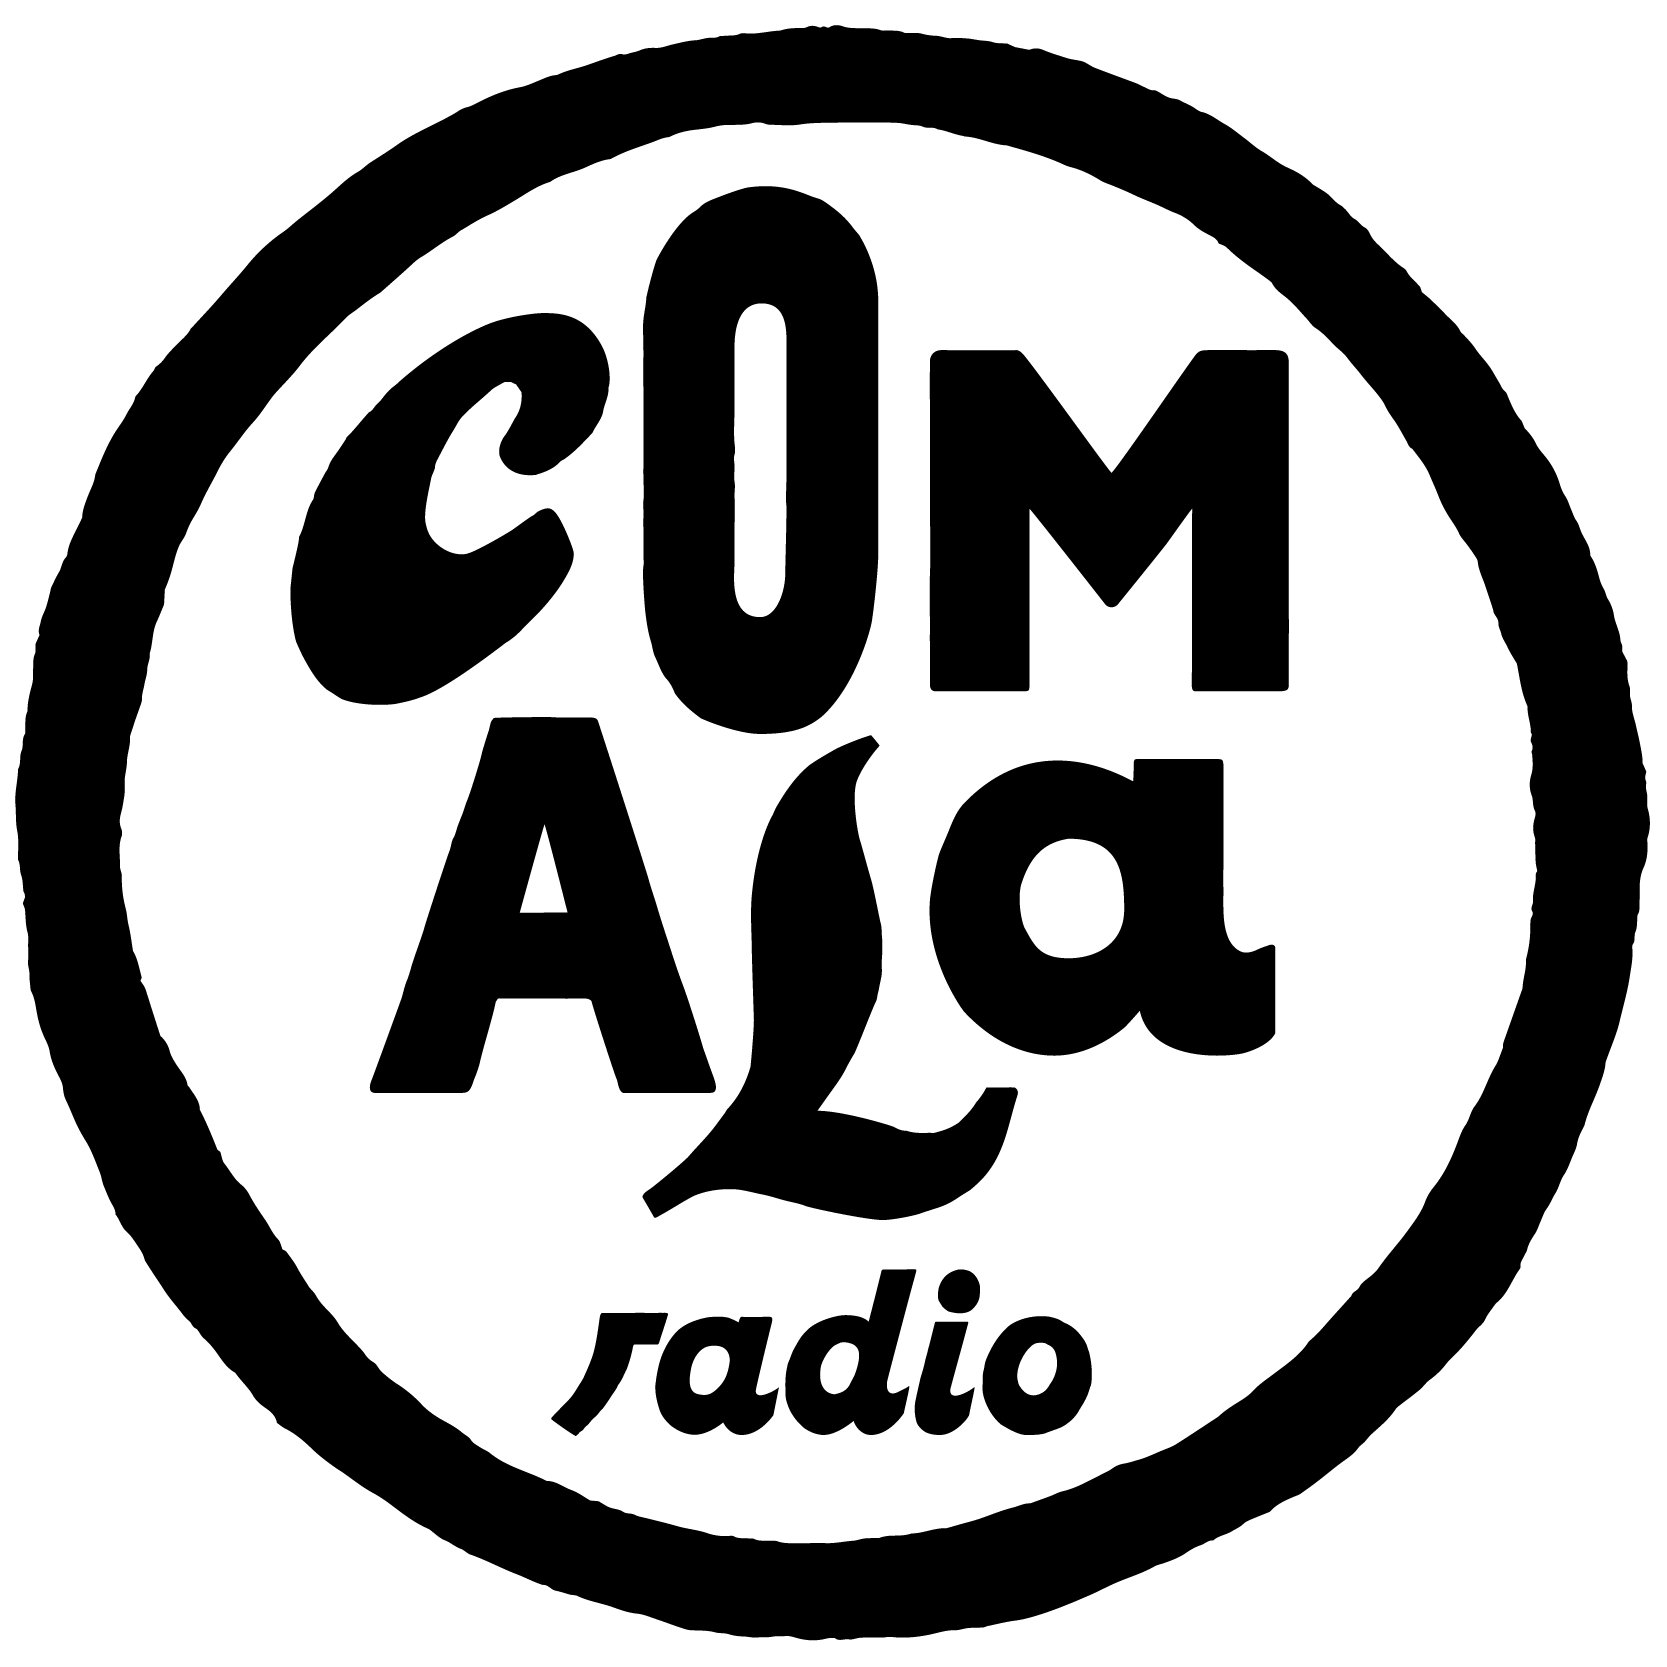 Comala Radio